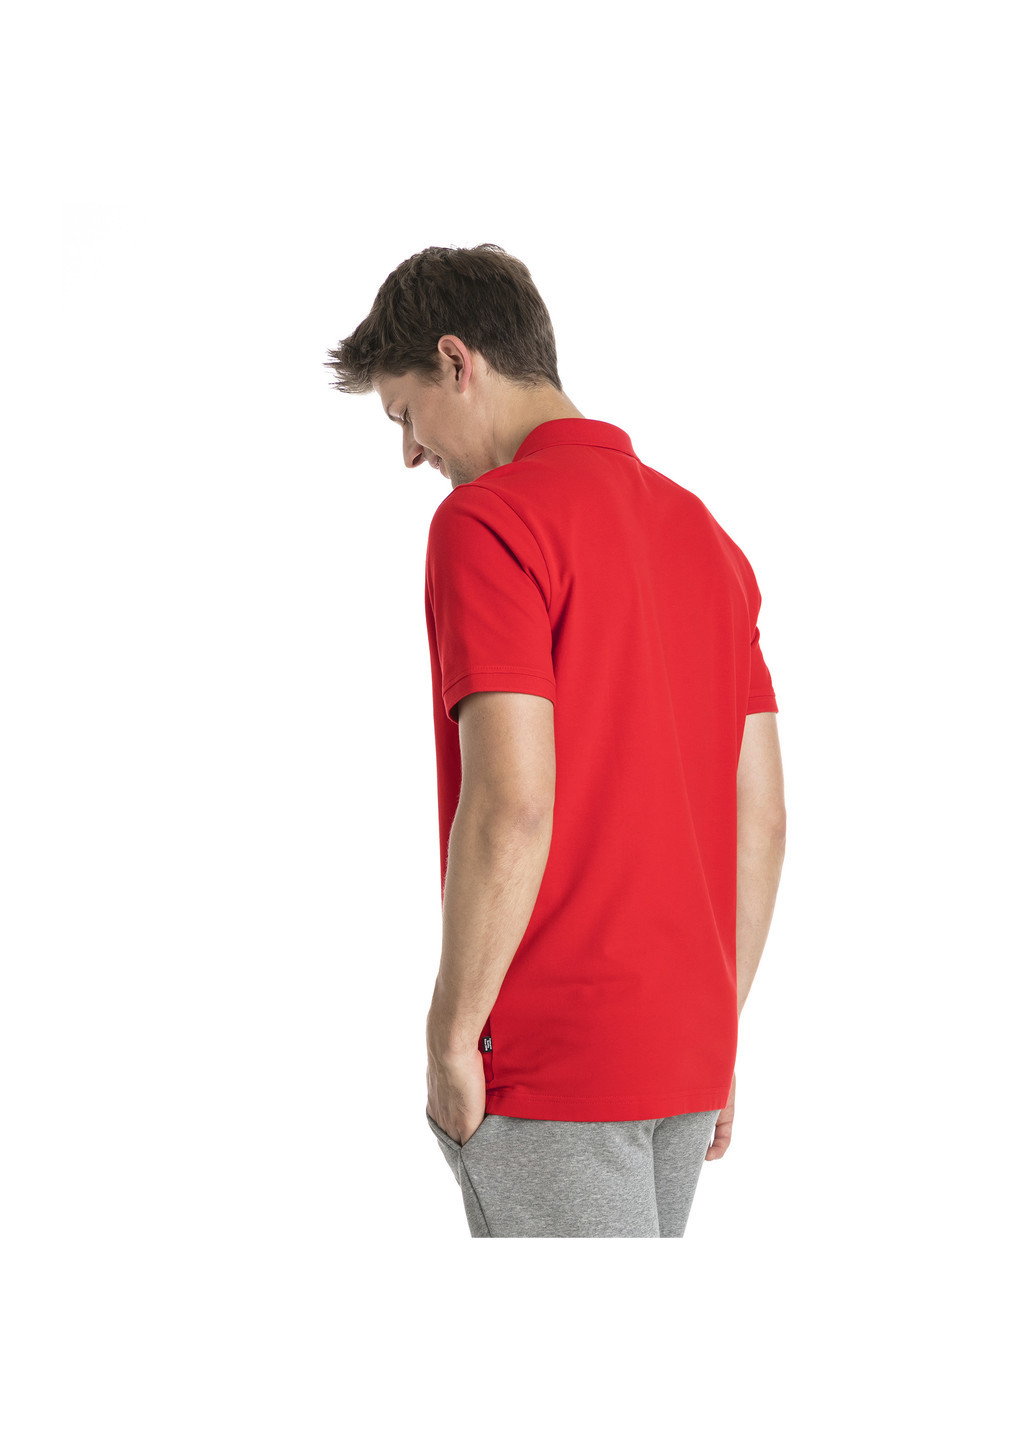 Красная футболка-поло для мужчин Puma однотонная